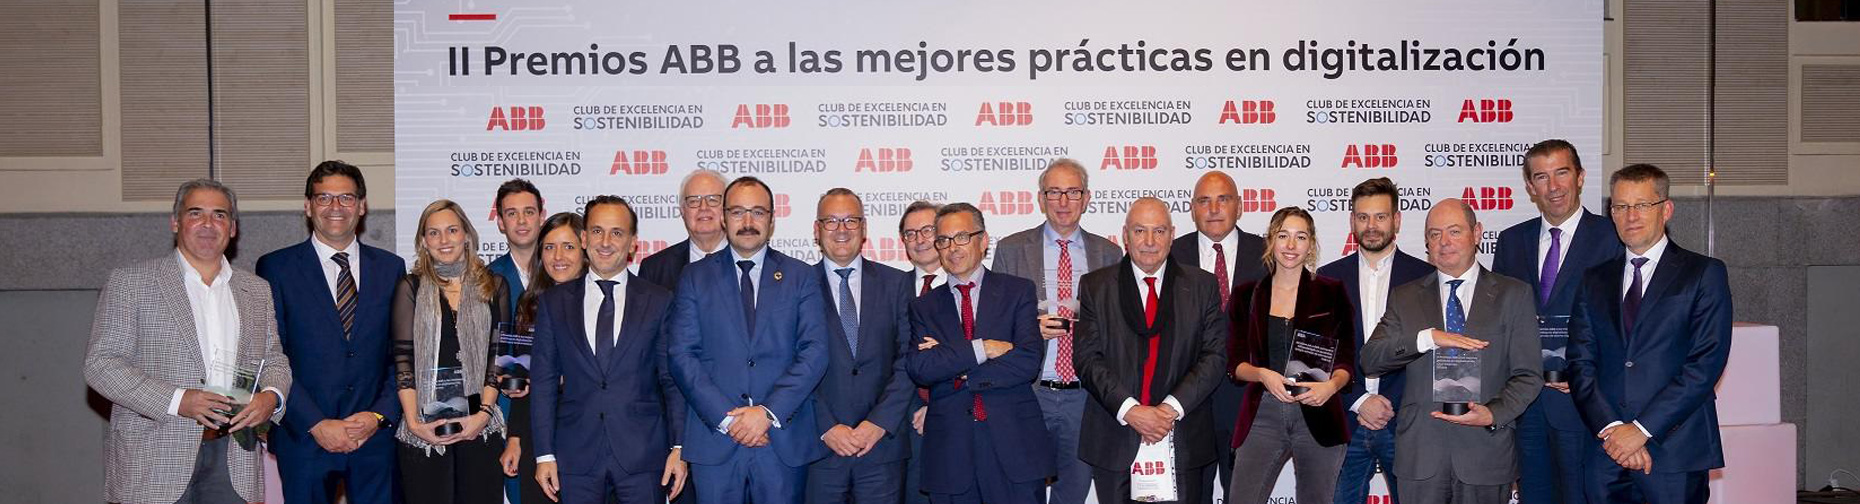 CELSA Group™ recibe el premio ABB a la mejor práctica en digitalización por el proyecto I-SCRAP